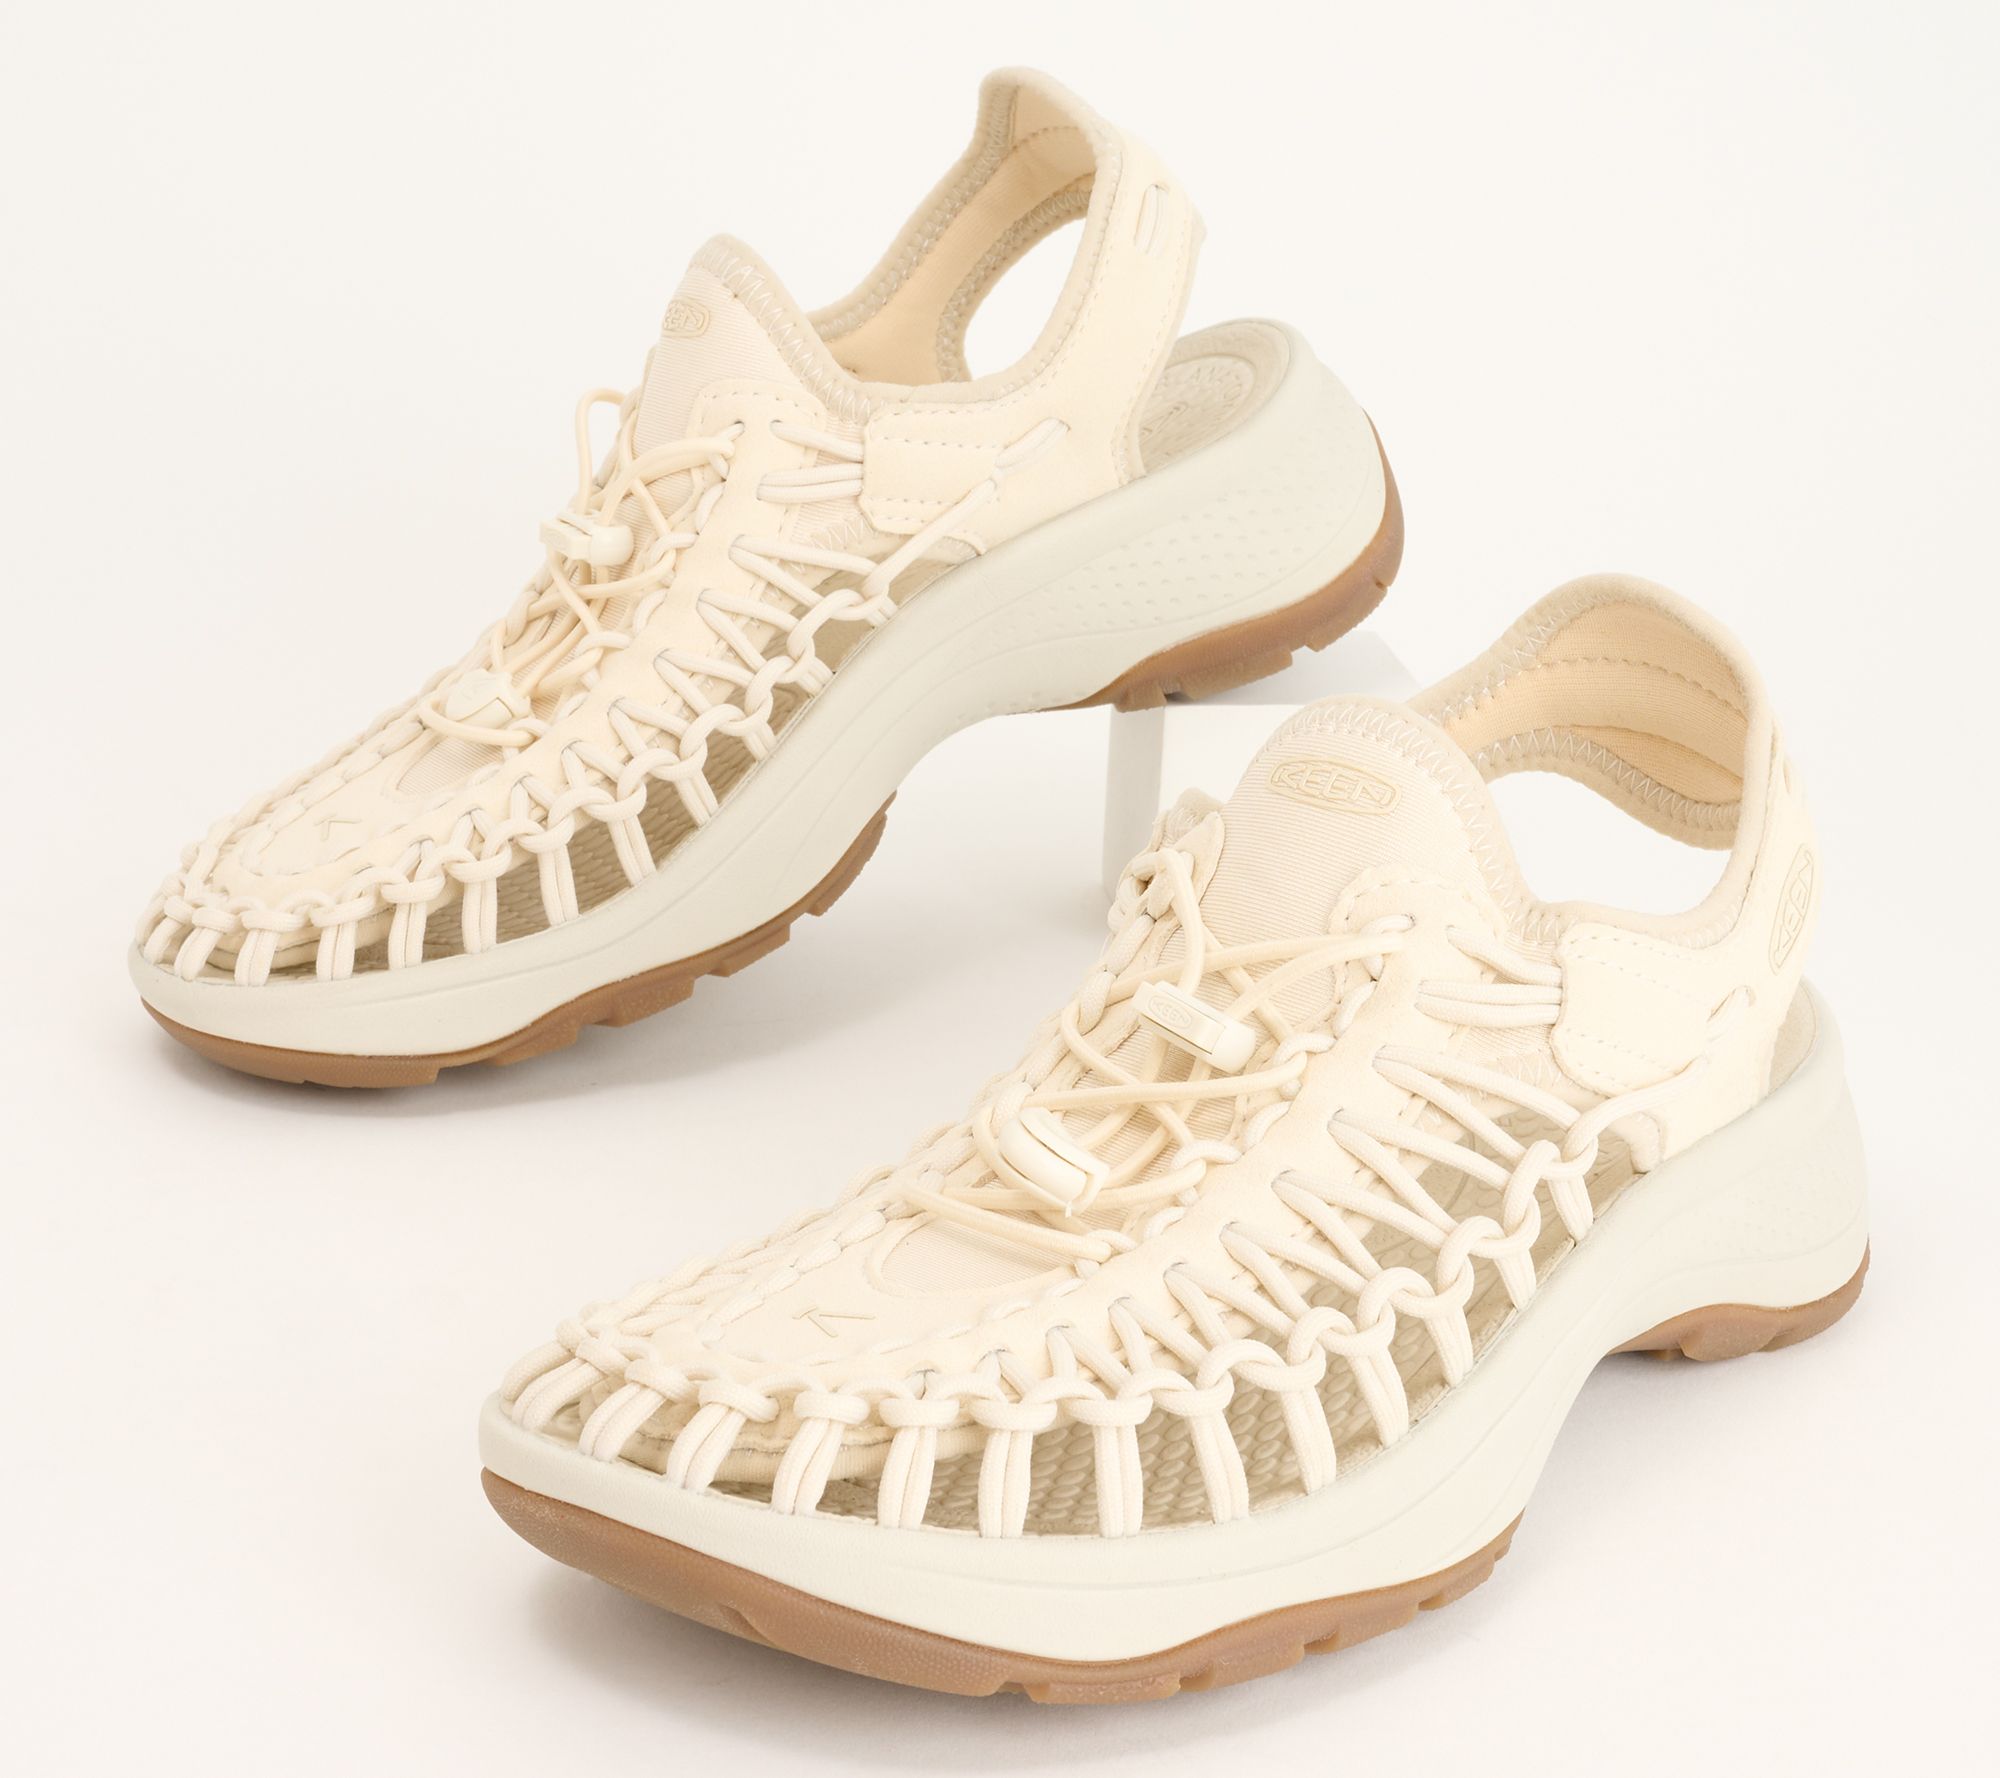 KEEN Braided Cord Bungee Sport Sandals - Uneek Astoria - QVC.com